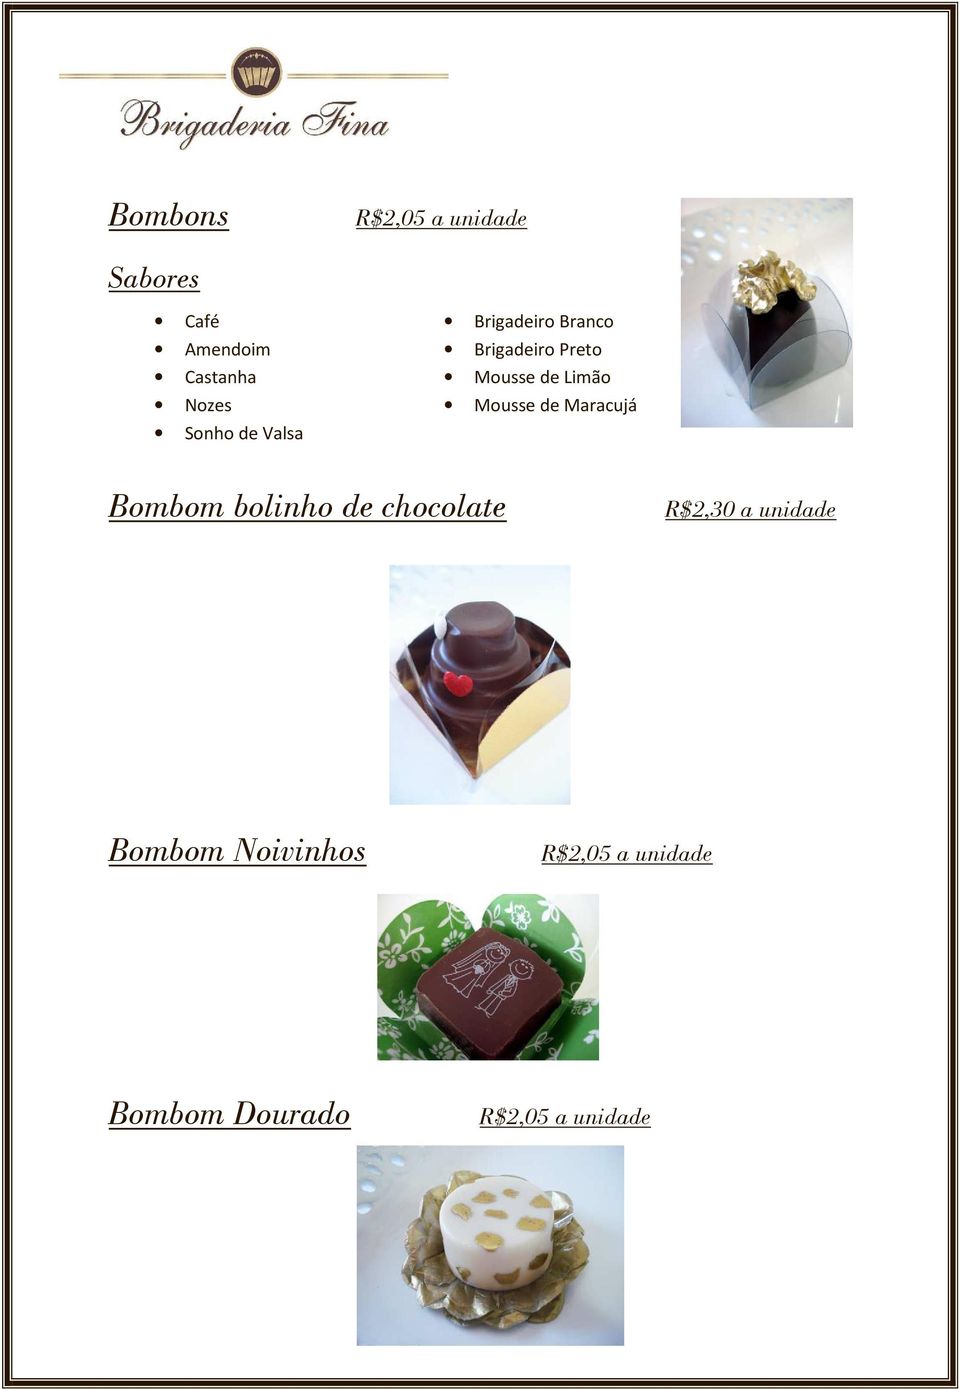 Limão Mousse de Maracujá Bombom bolinho de chocolate R$2,30 a